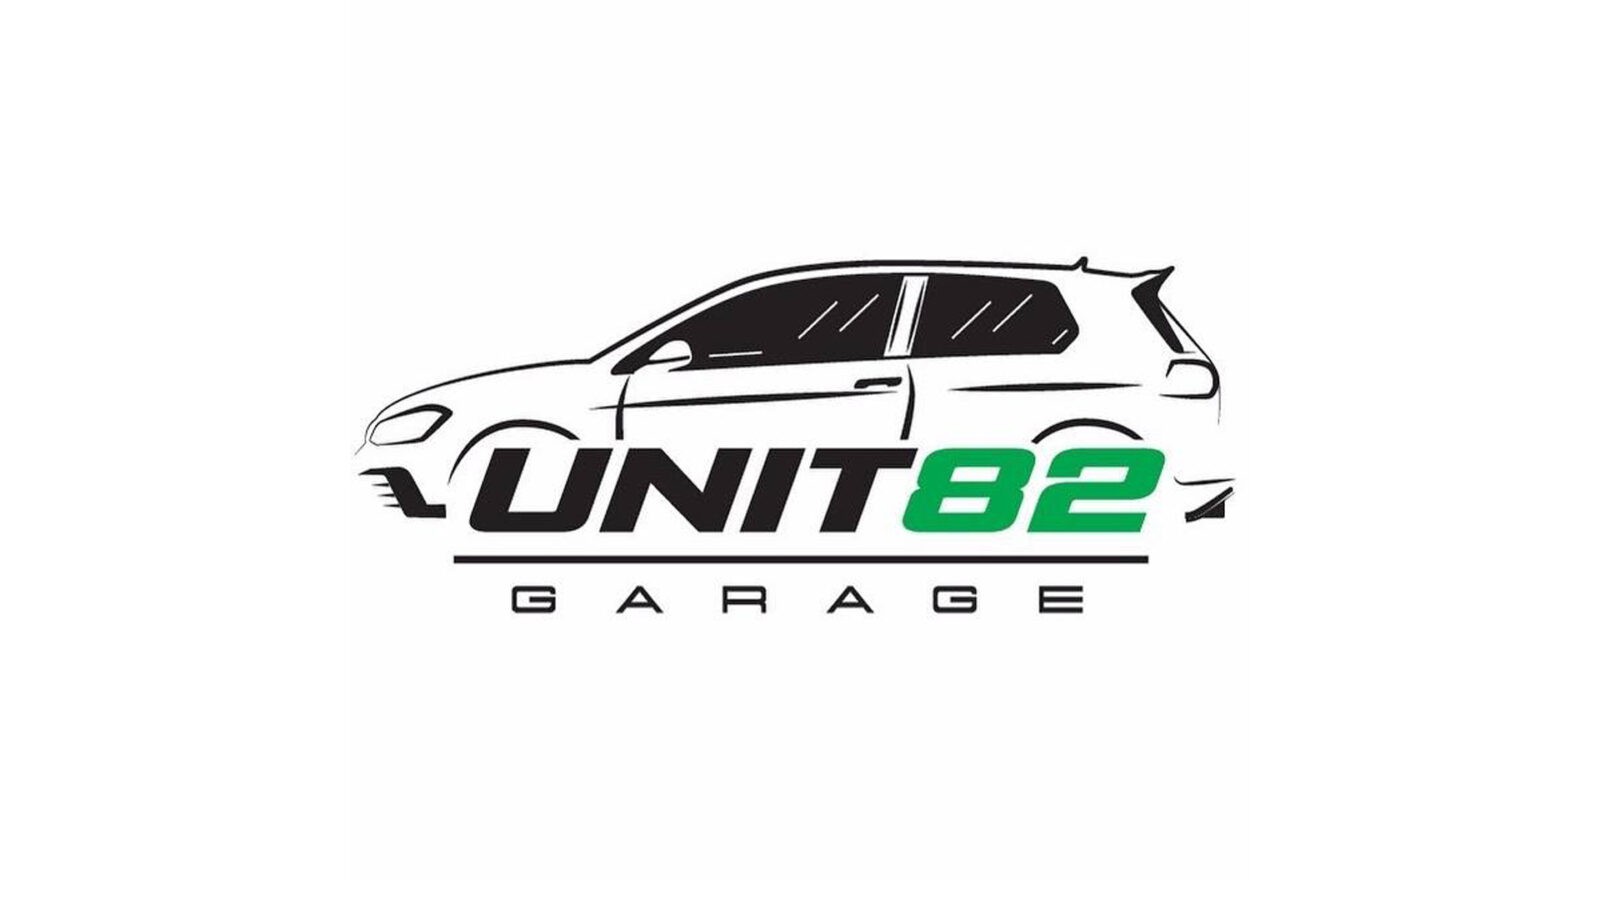 Unit 82 Garage